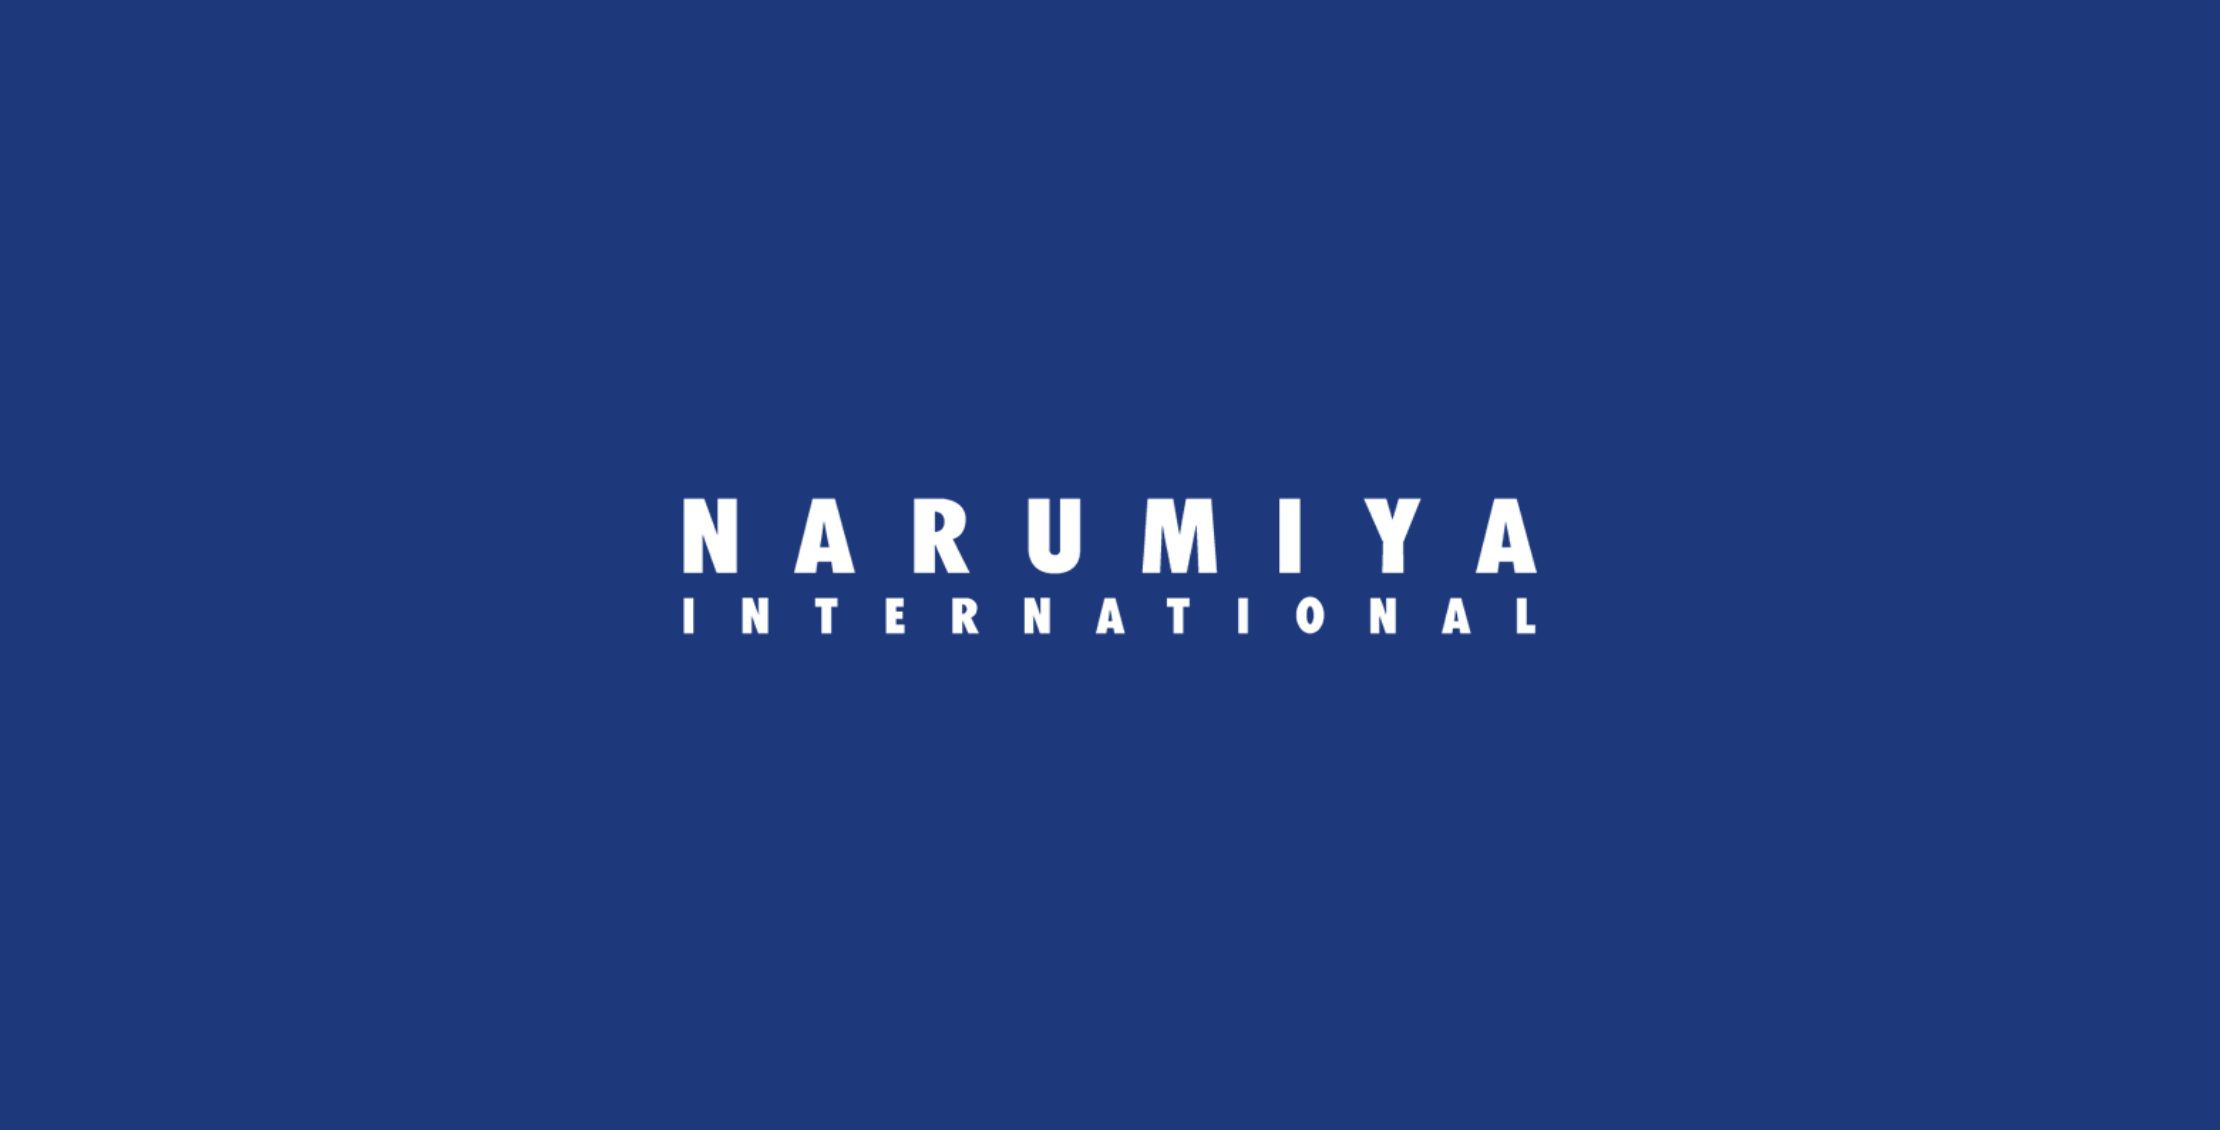 ナルミヤインターナショナル様のロゴ